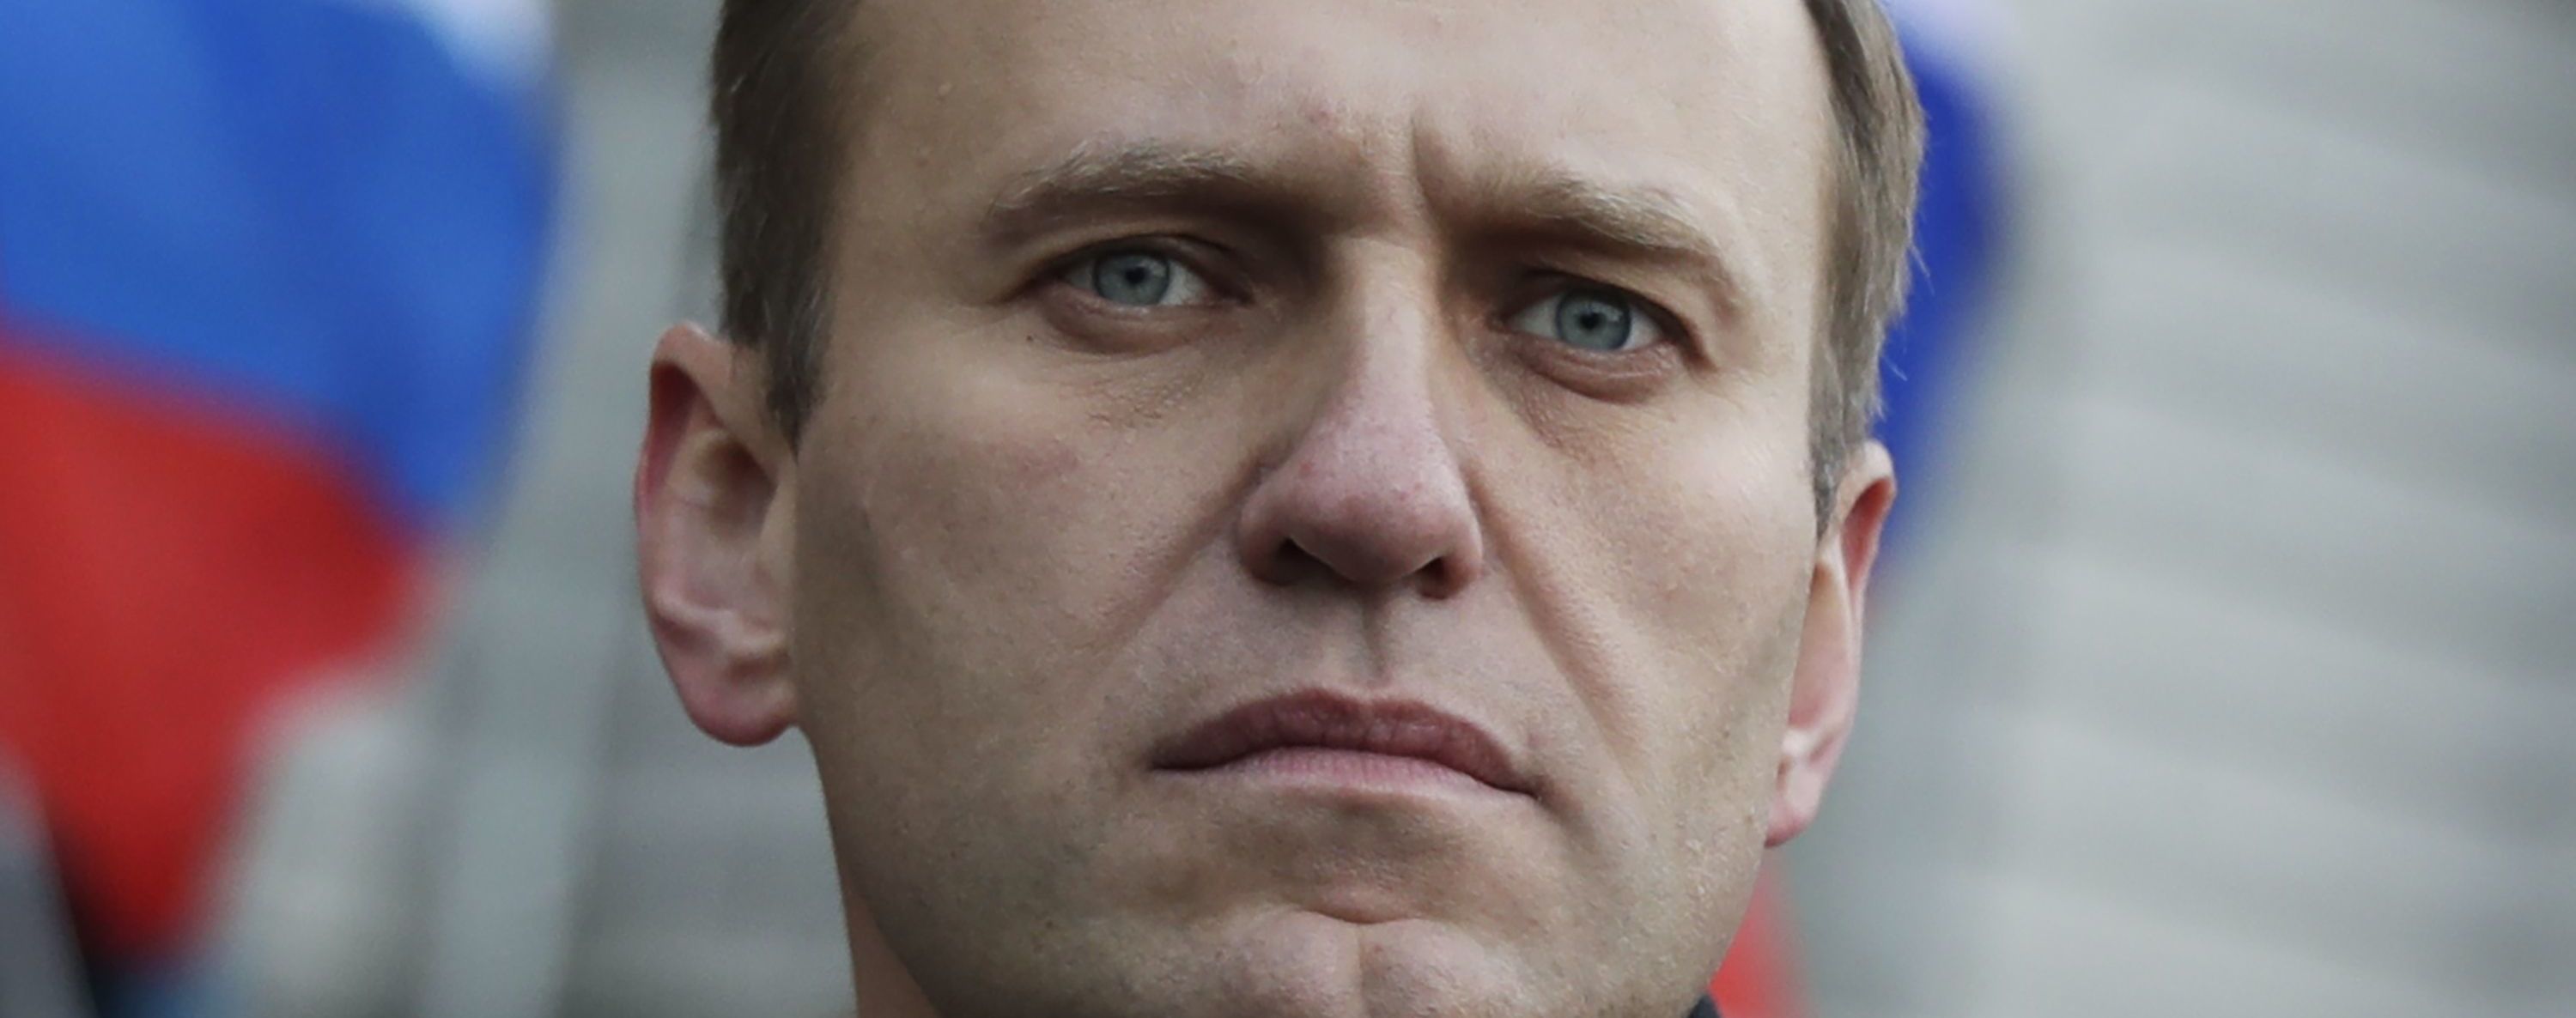 "Следствие по отравлению Навального не началось, потому что Германия не передала доказательства диагноза" — МИД России